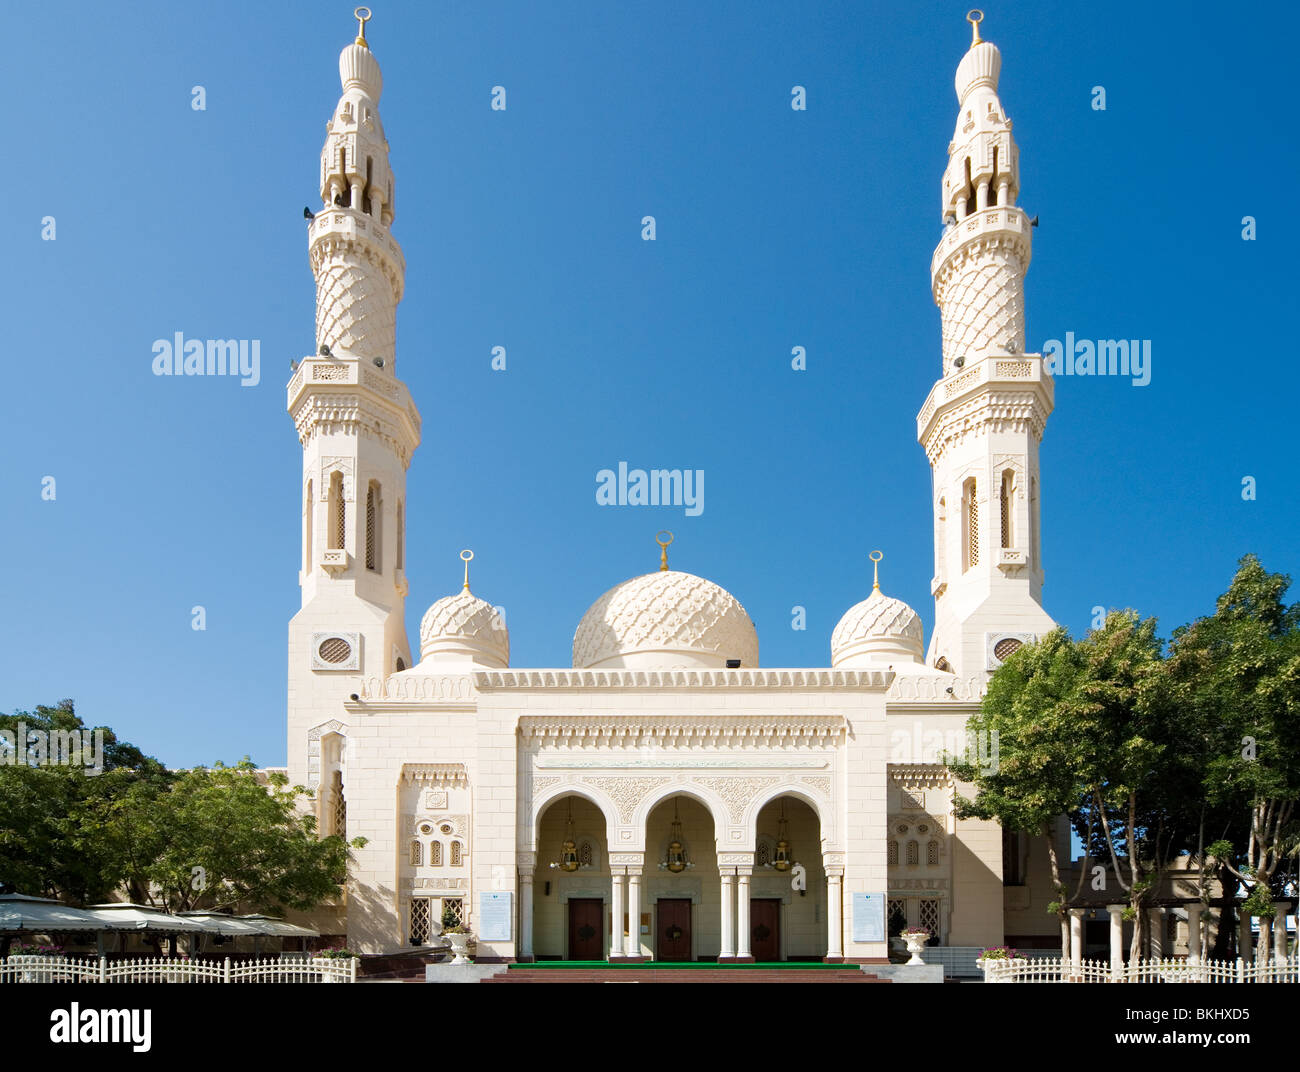 Porte d'entrée ou façade de la mosquée de Jumeirah à Dubaï, Émirats arabes unis, ÉMIRATS ARABES UNIS Banque D'Images